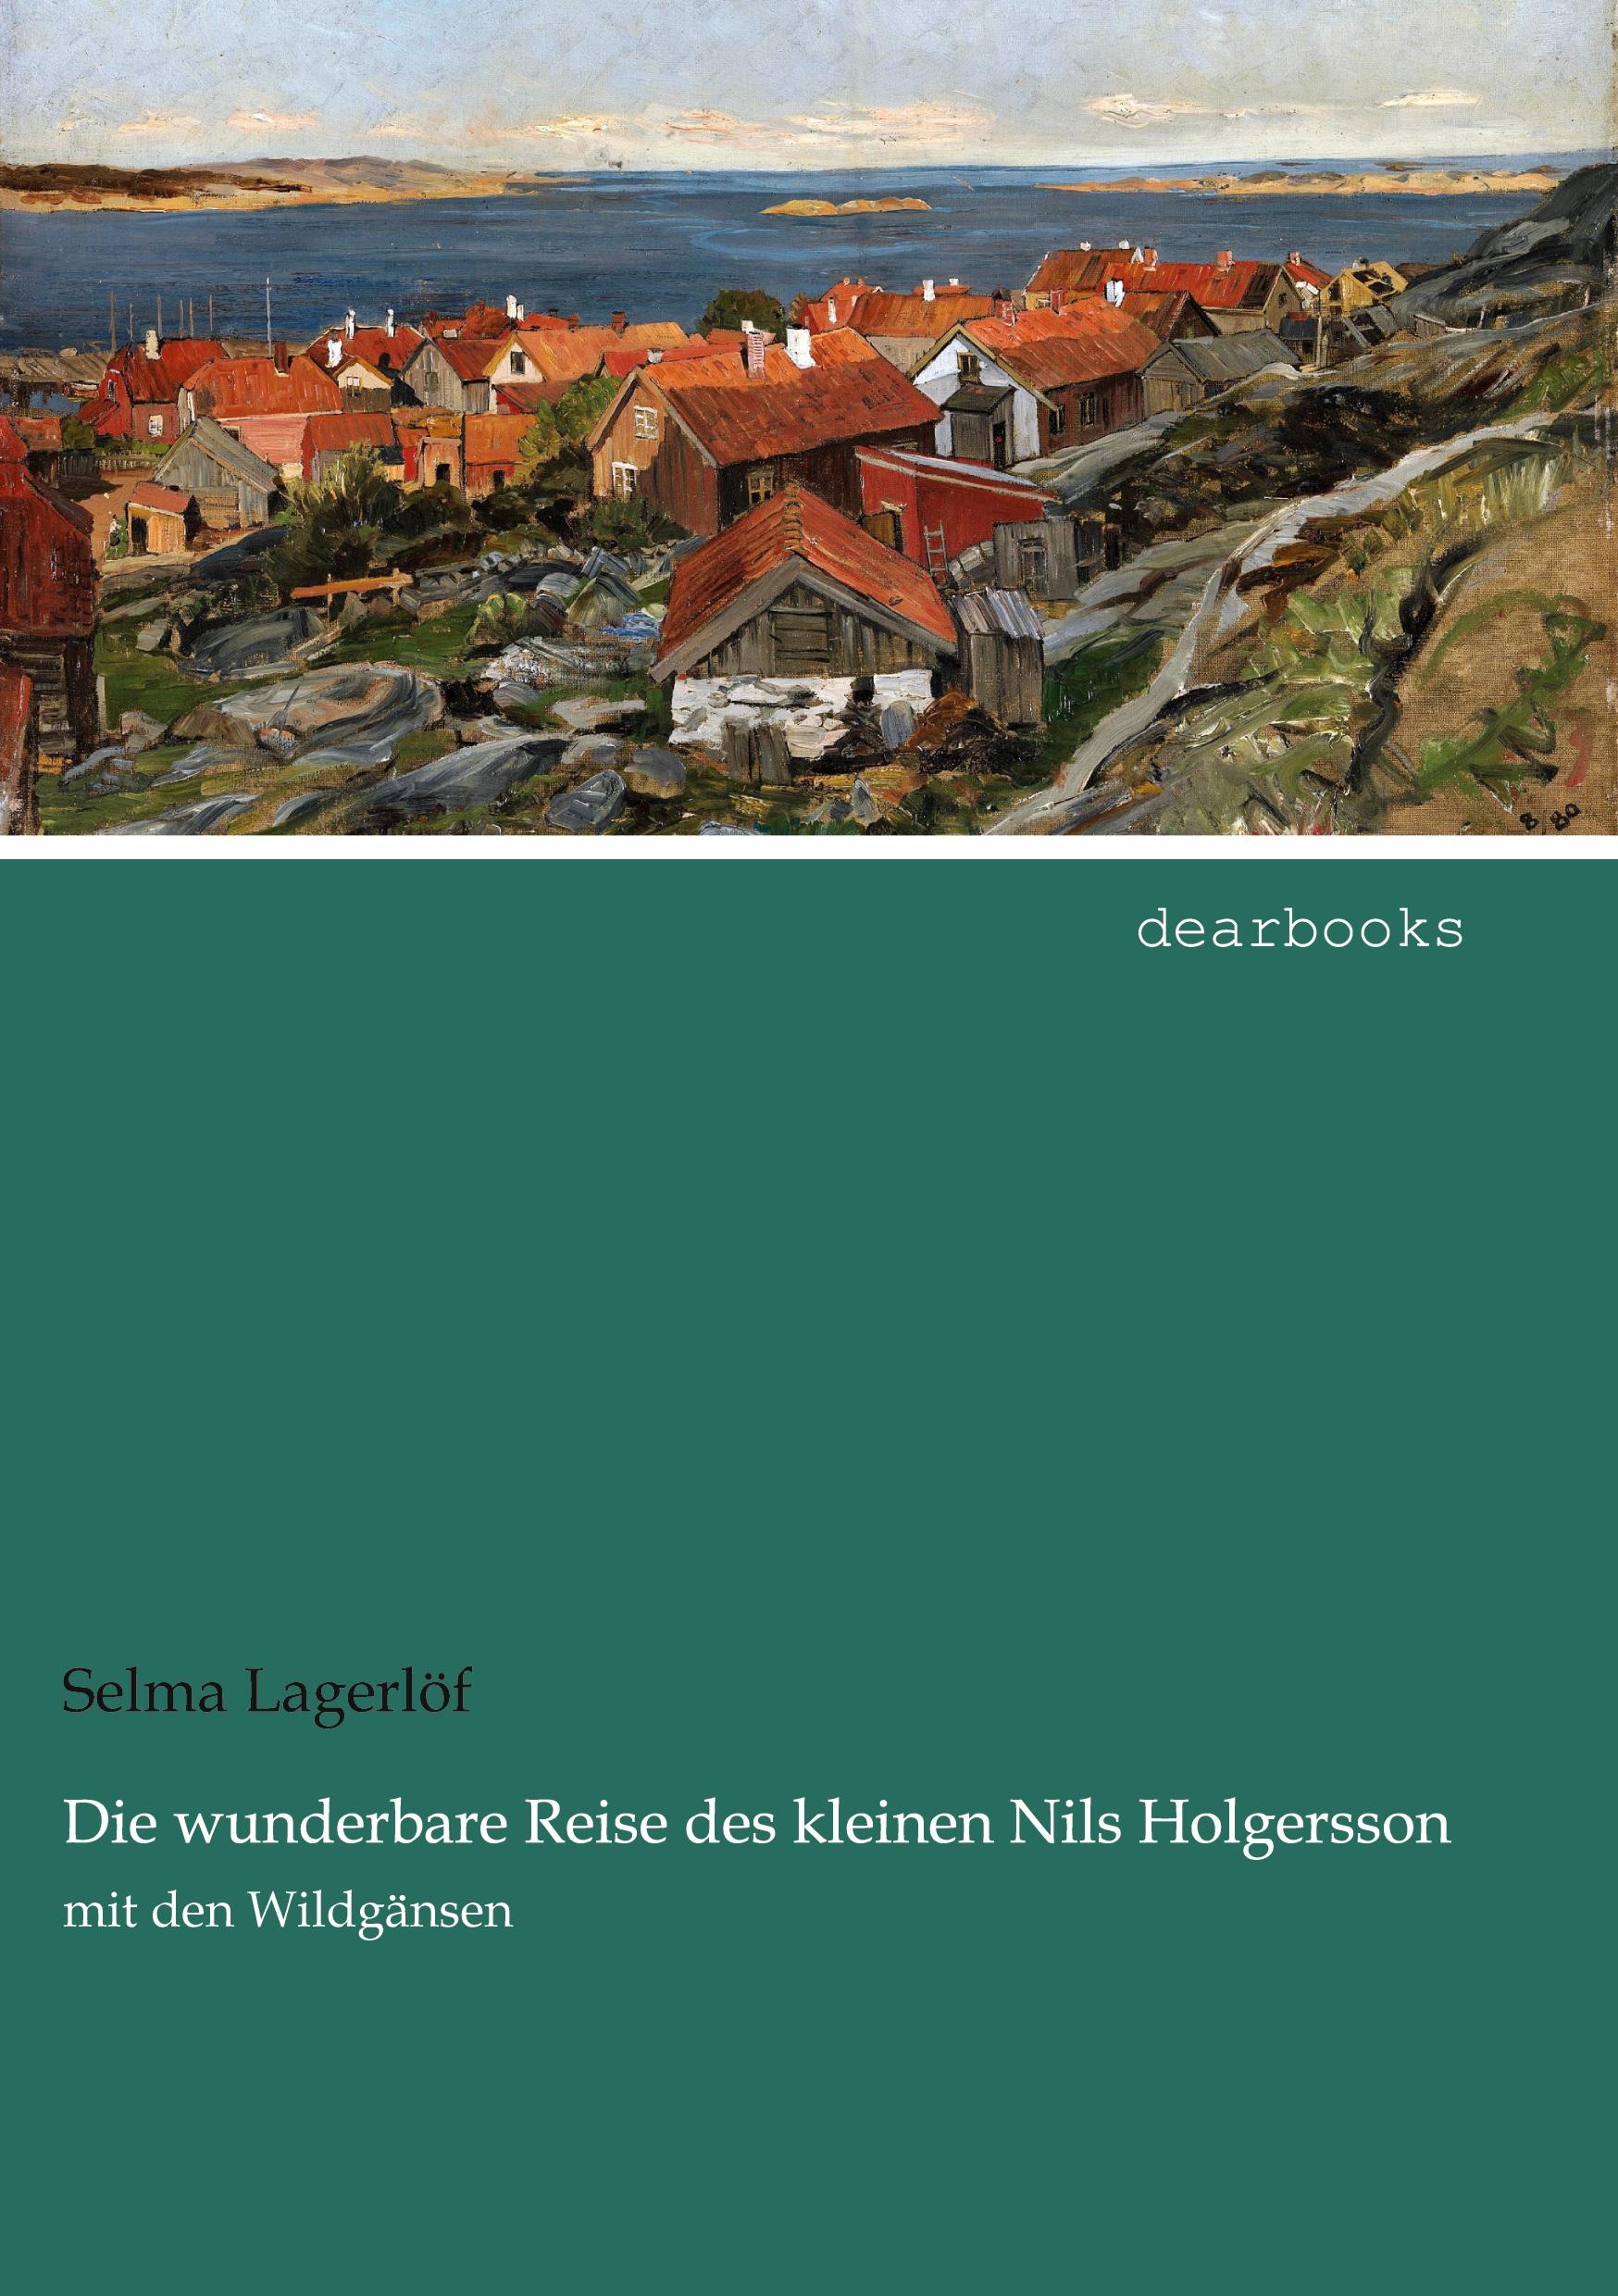 Die wunderbare Reise des kleinen Nils Holgersson | mit den Wildgänsen | Selma Lagerlöf | Taschenbuch | Paperback | 500 S. | Deutsch | 2021 | dearbooks | EAN 9783954559022 - Lagerlöf, Selma